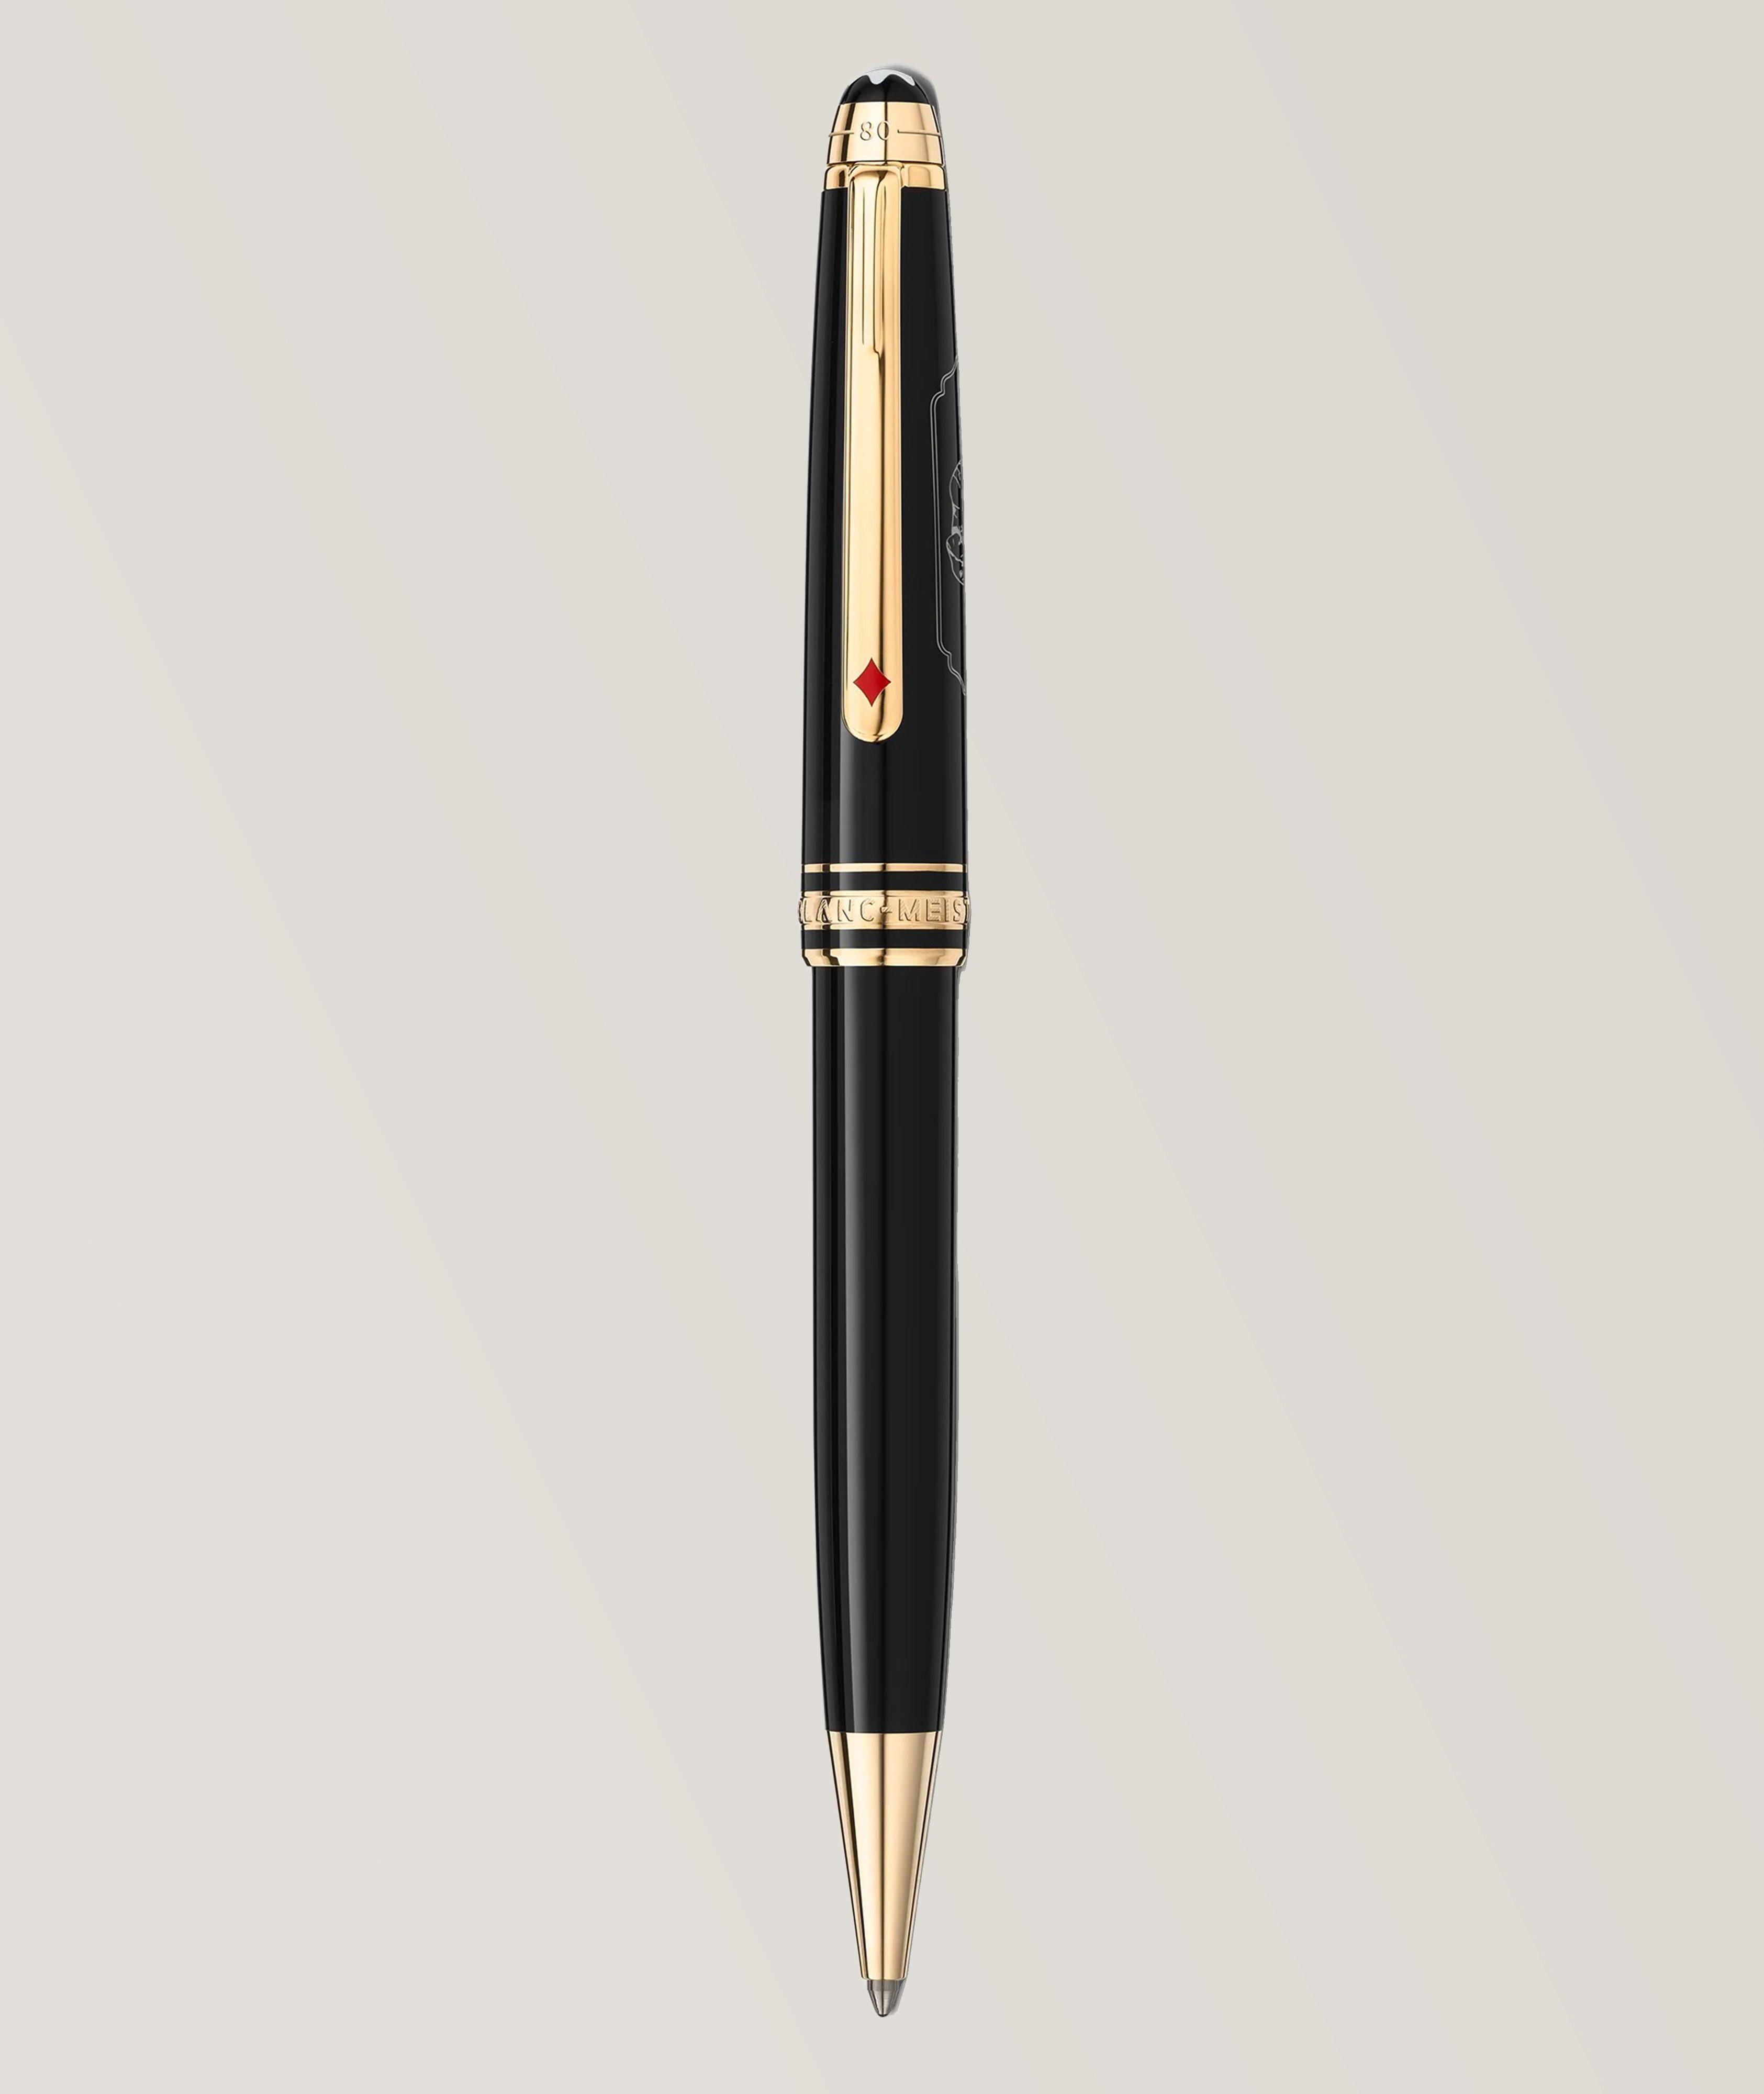 Meisterstück Resin Classique Around The World In 80 Days Ballpoint Pen